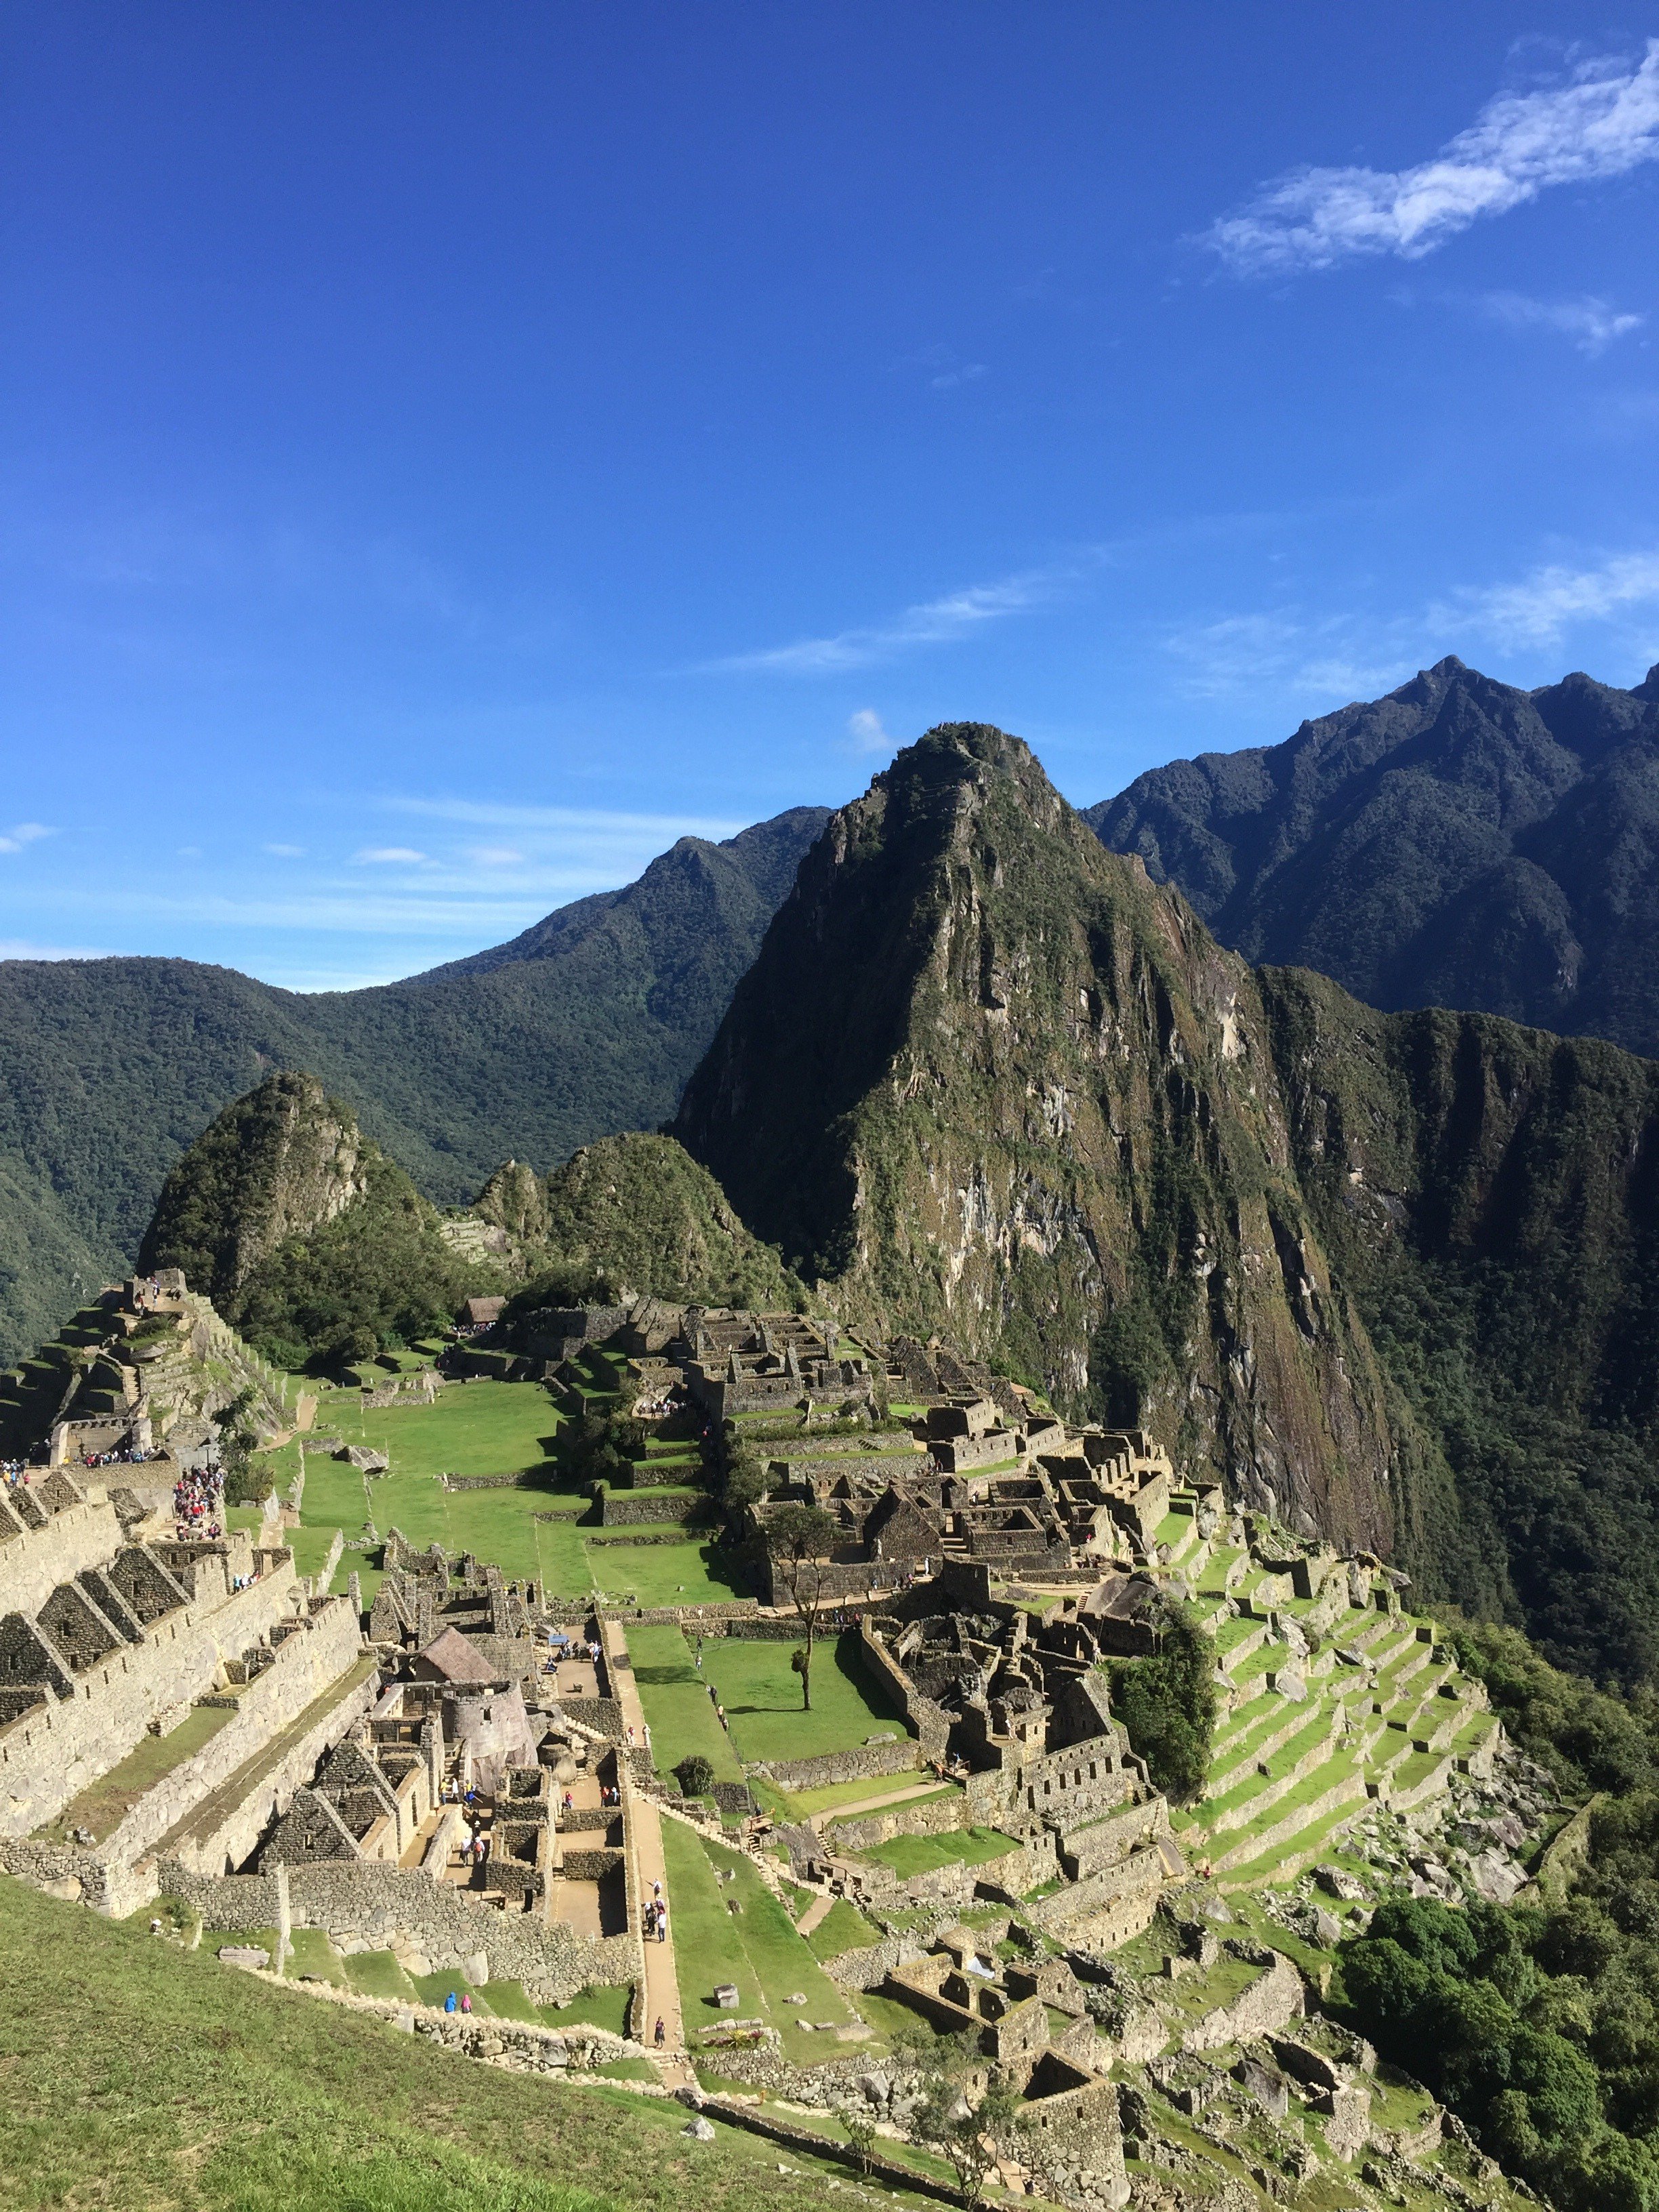 マッキー 美しい風景が好き 古代都市マチュピチュ ペルー 大自然の中に建築物や文明が今でも残っているのがすごいなぁとしみじみしました T Co 0fw69h4jeb Twitter